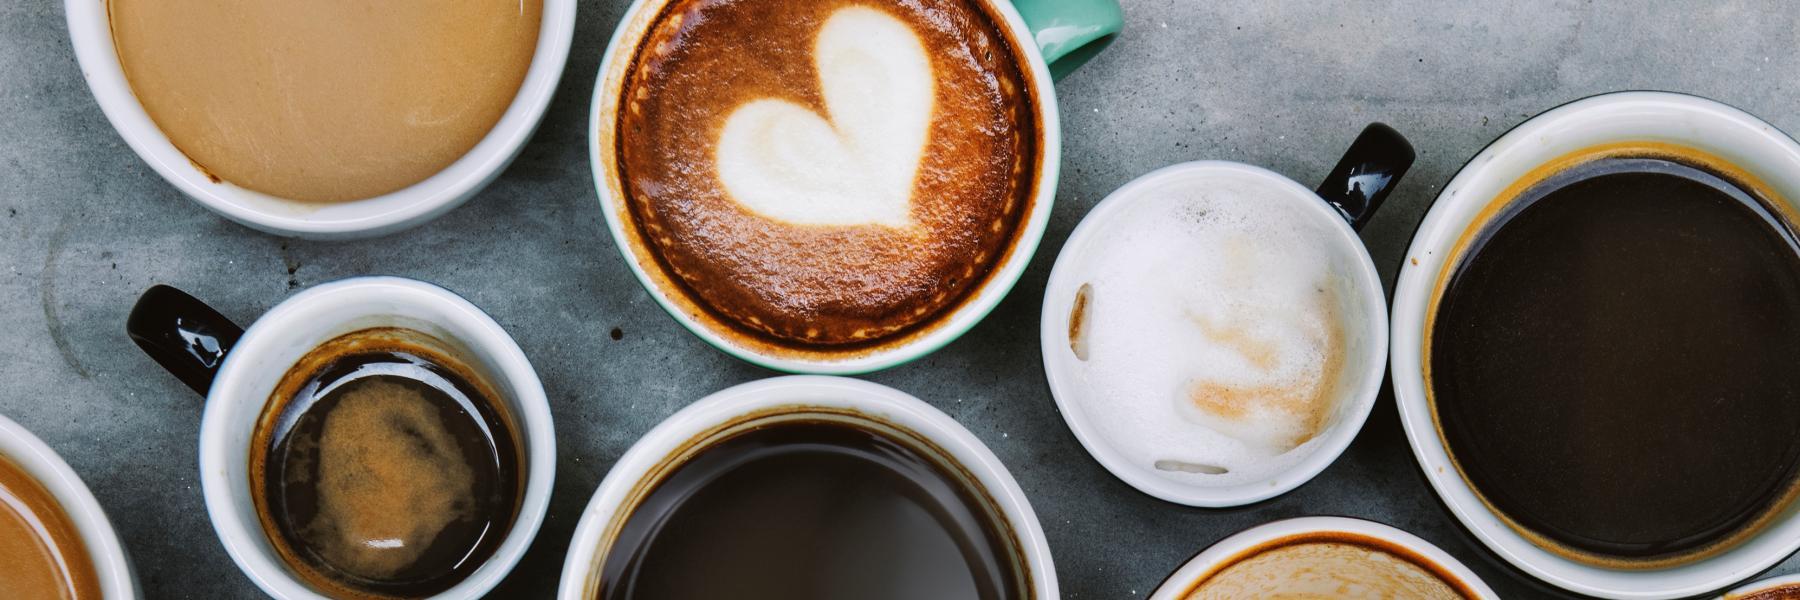 استبدل قهوتك بهذه المشروبات الصحية المشهية